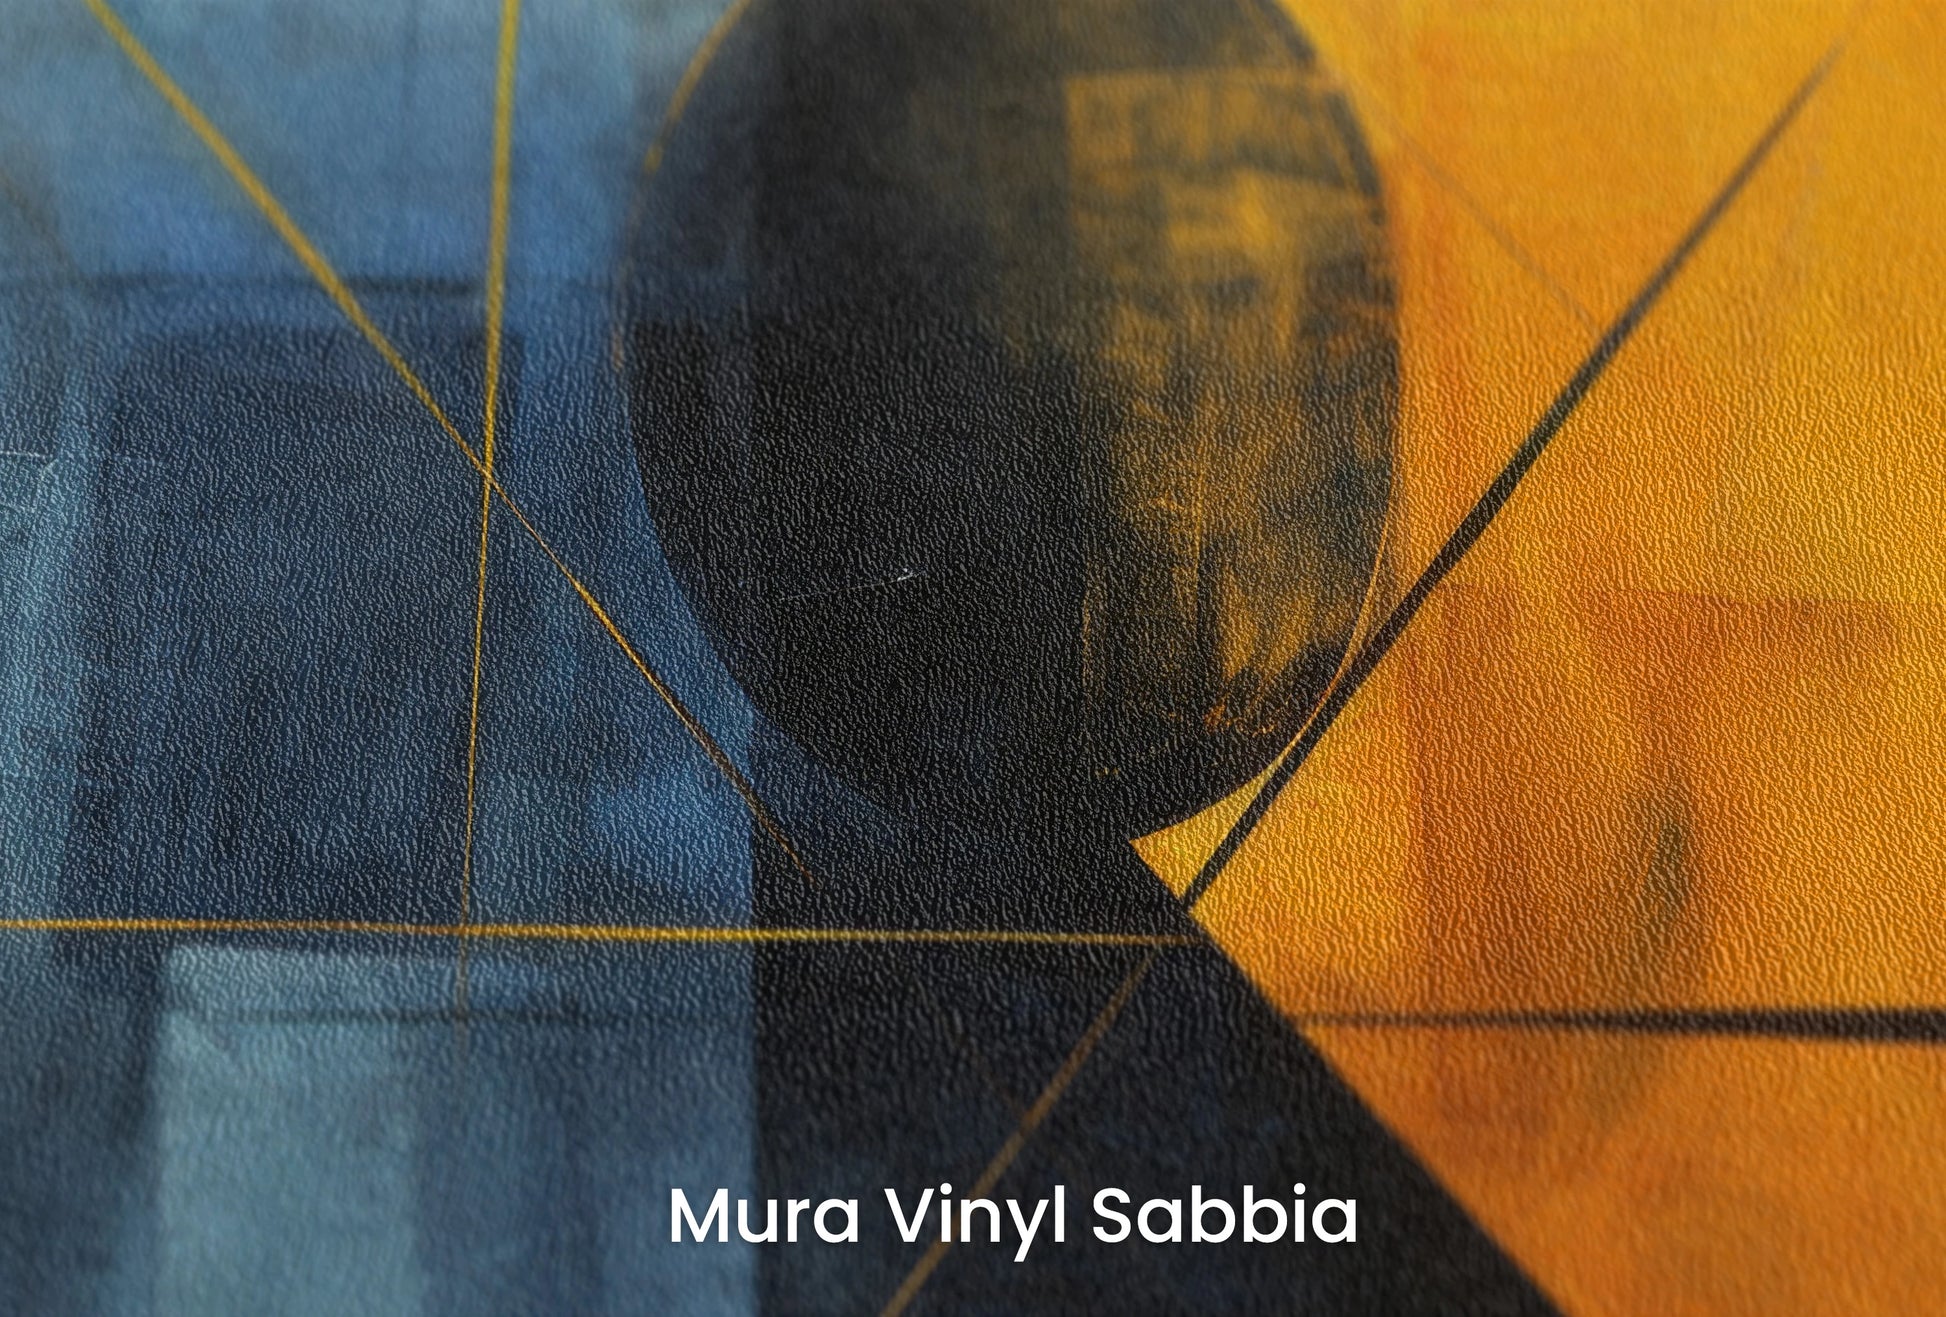 Zbliżenie na artystyczną fototapetę o nazwie Night's Embrace na podłożu Mura Vinyl Sabbia struktura grubego ziarna piasku.